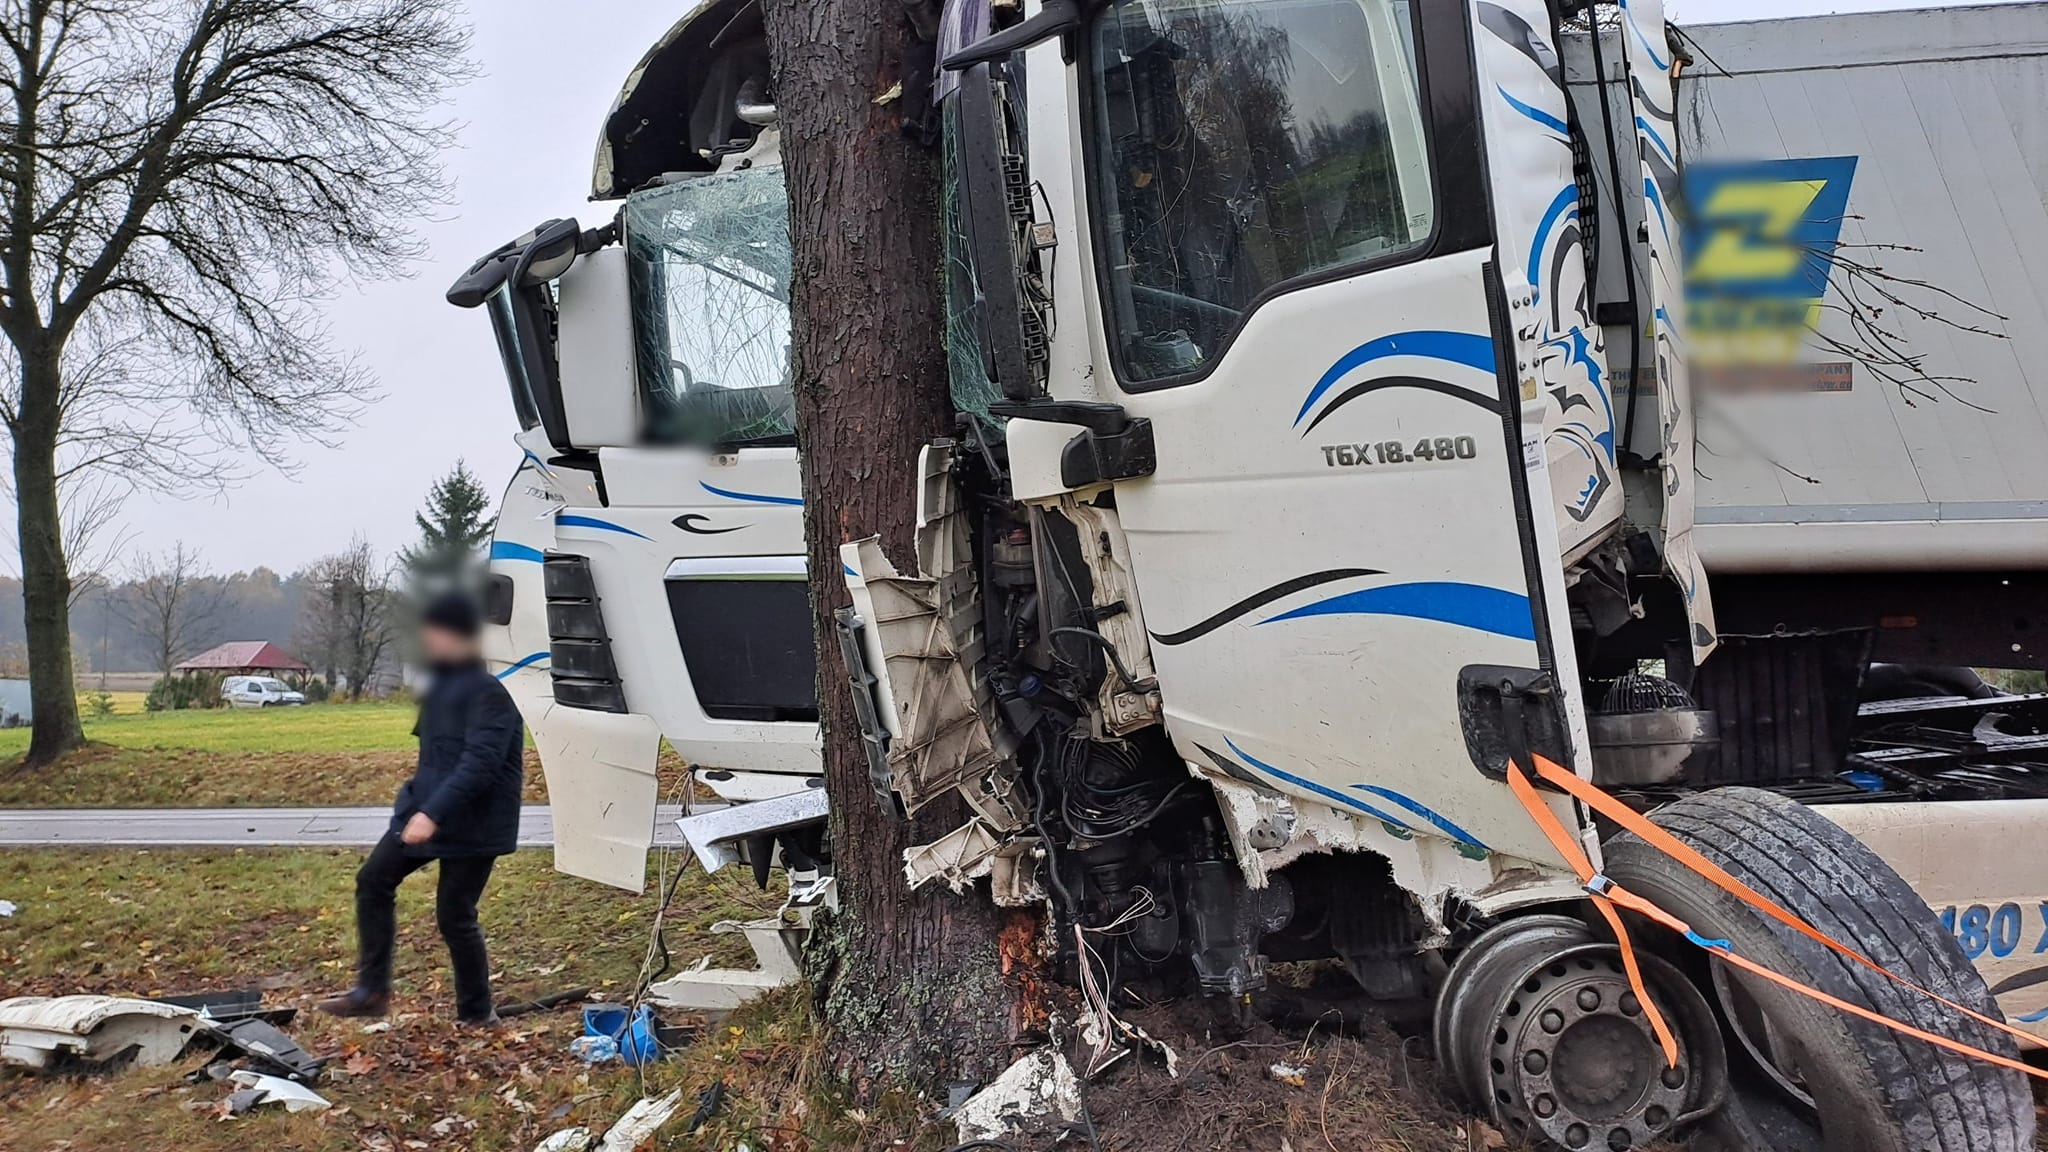 dramat na drodze. tir rozbił osobówkę, ale zginął kierowca ciężarówki!